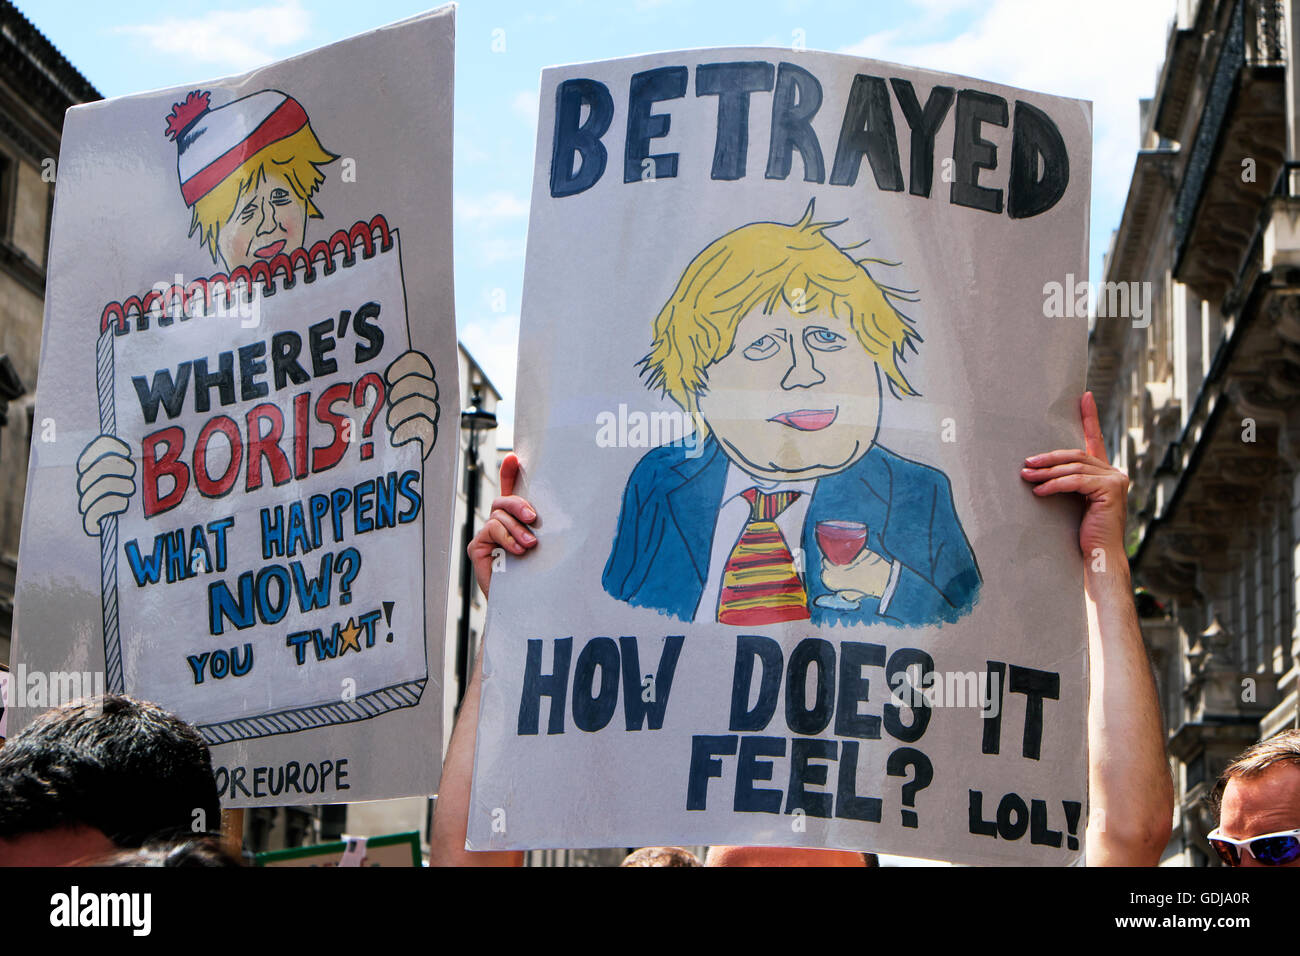 Los manifestantes protestaban contra la celebración de Boris Johnson posters en referéndum Brexit 'March para Europa" manifestación en Londres, julio de 2016 Kathy DEWITT Foto de stock